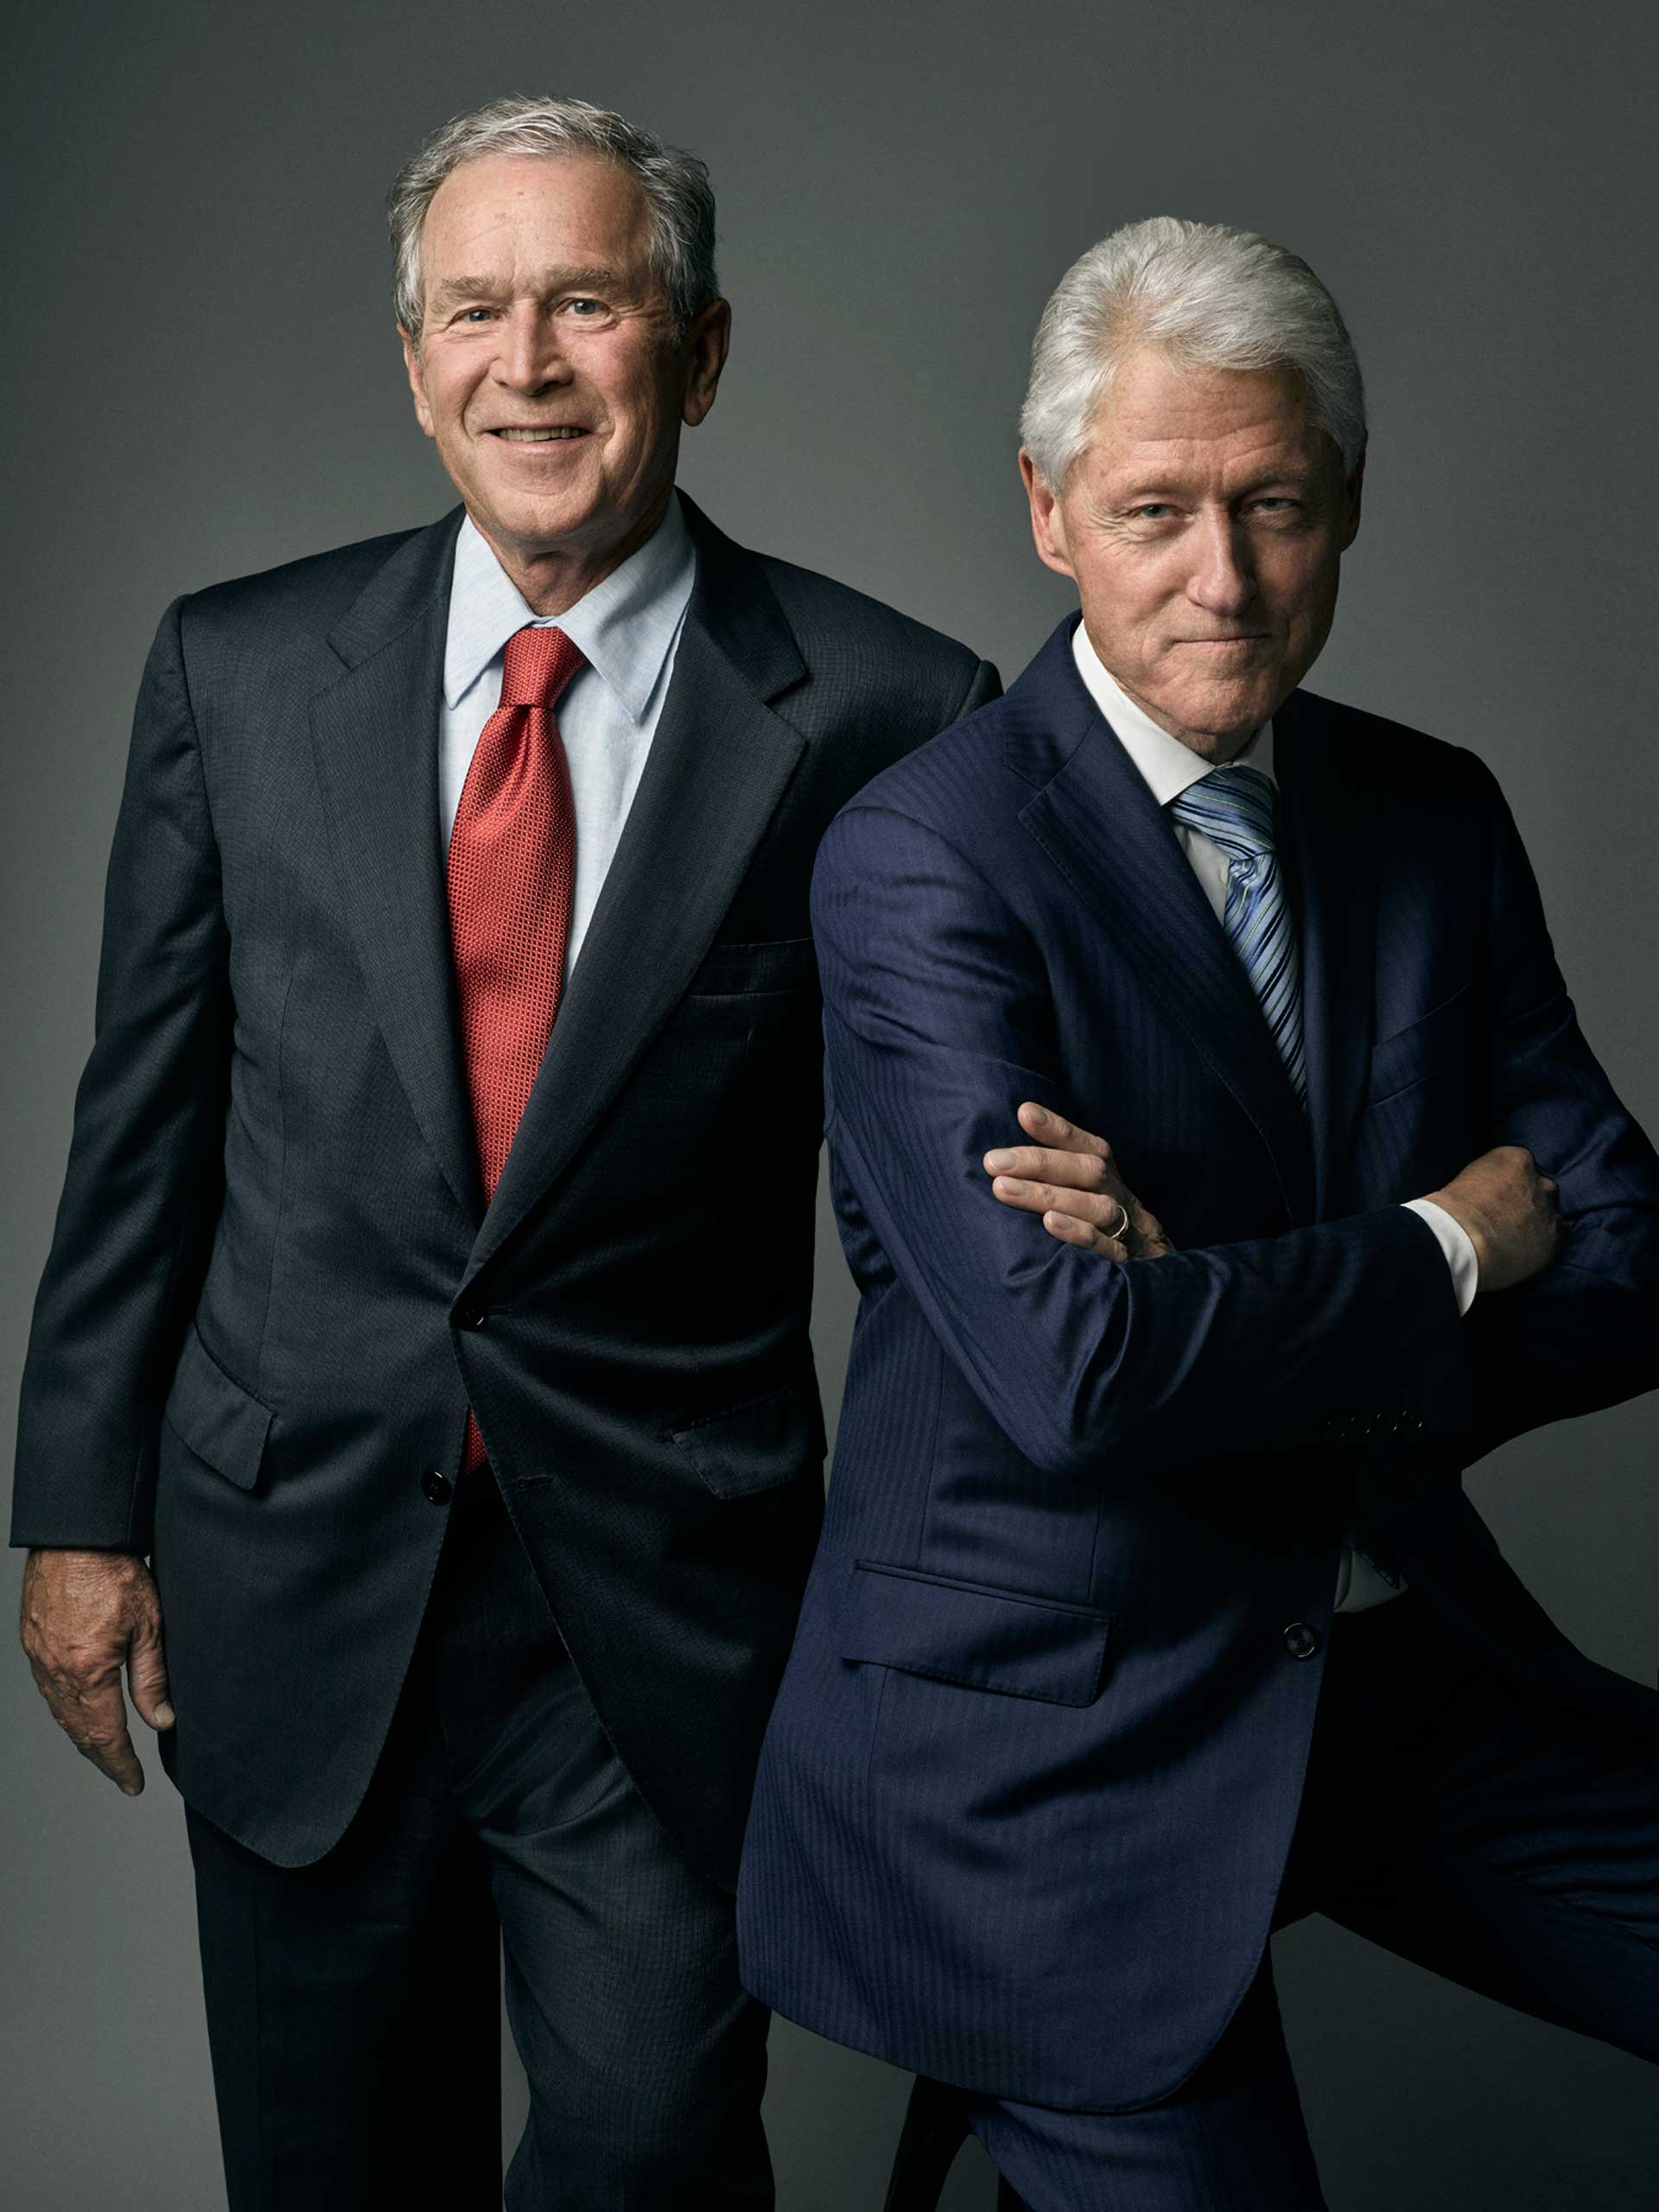 Former presidents Bill Clinton and George W. Bush